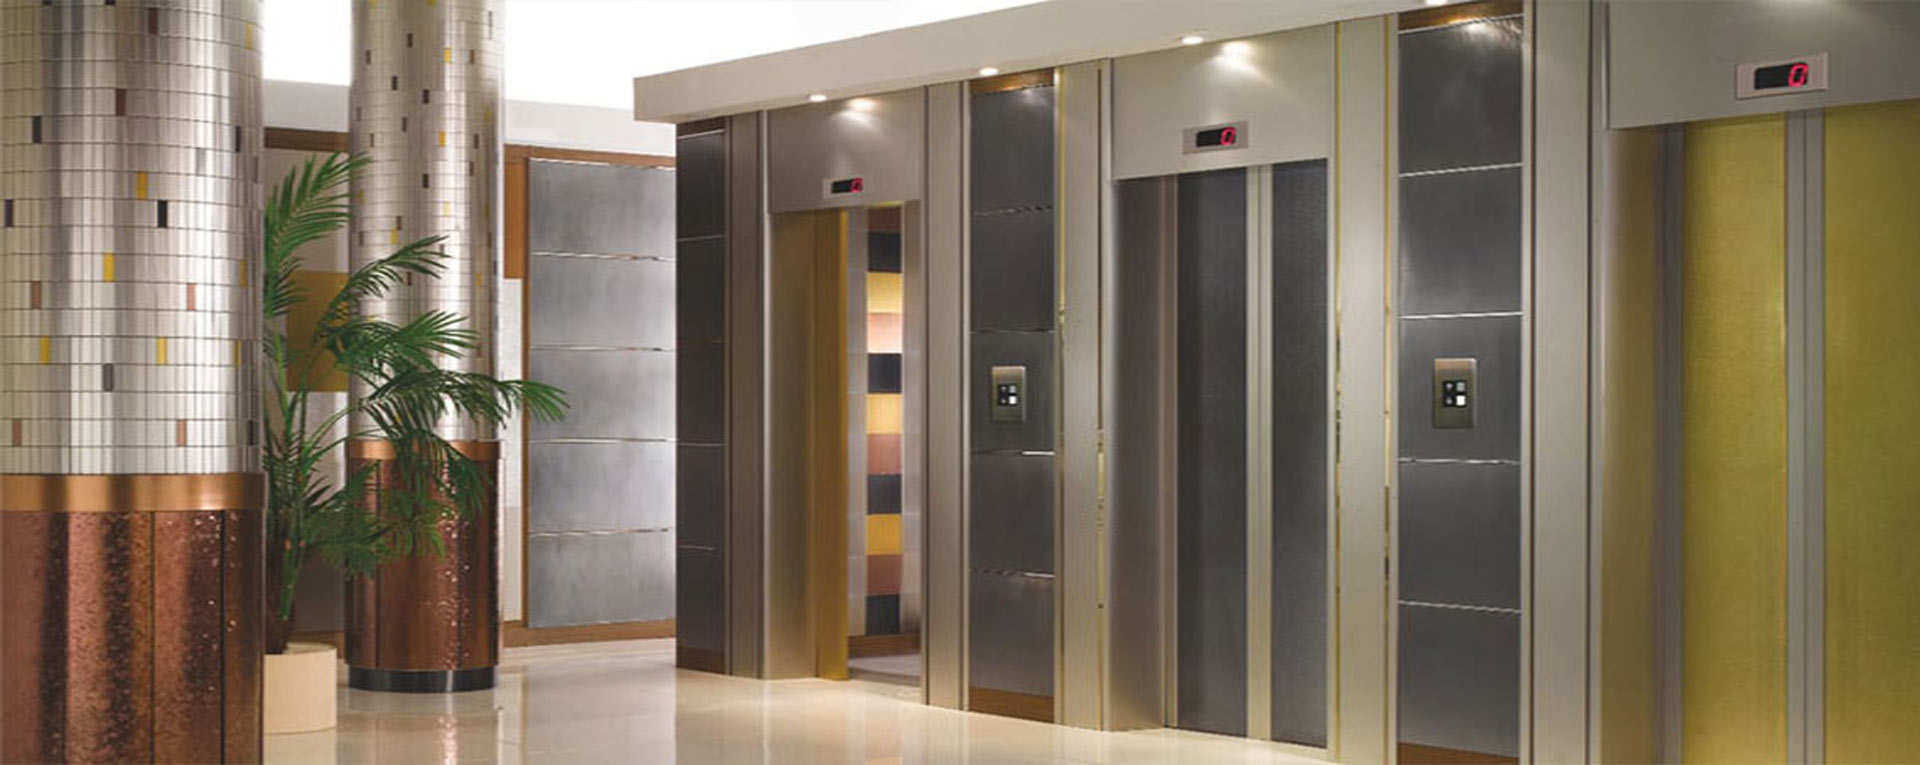 Три вертикальный лифта. Лифт Solon Premium. Лифт Отис пассажирский. Лифты Sanyo. Лифт Отис 3 этаж.